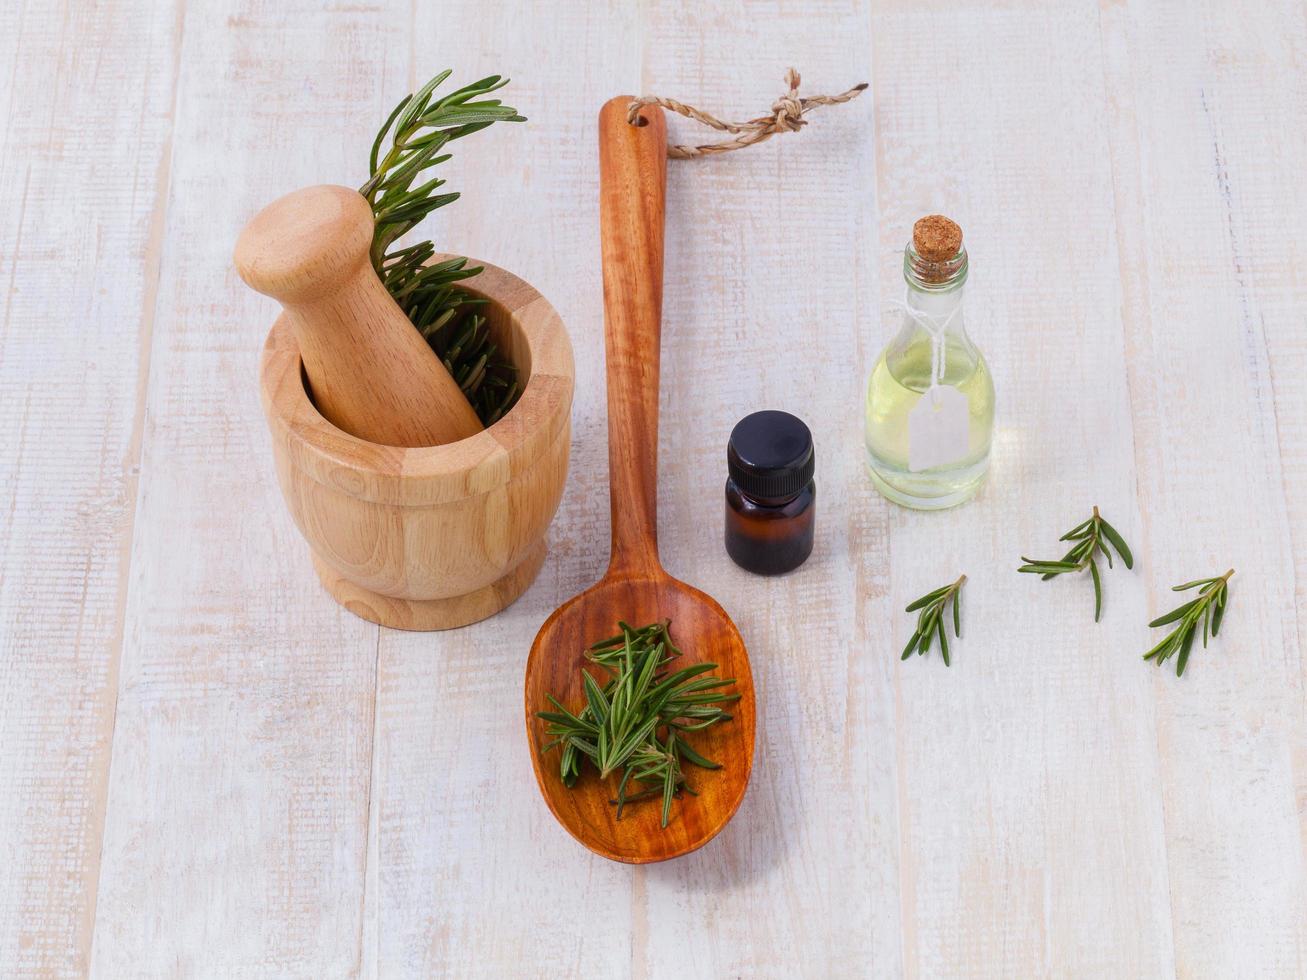 ingrédients naturels du spa huile essentielle de sauge pour l'aromathérapie photo